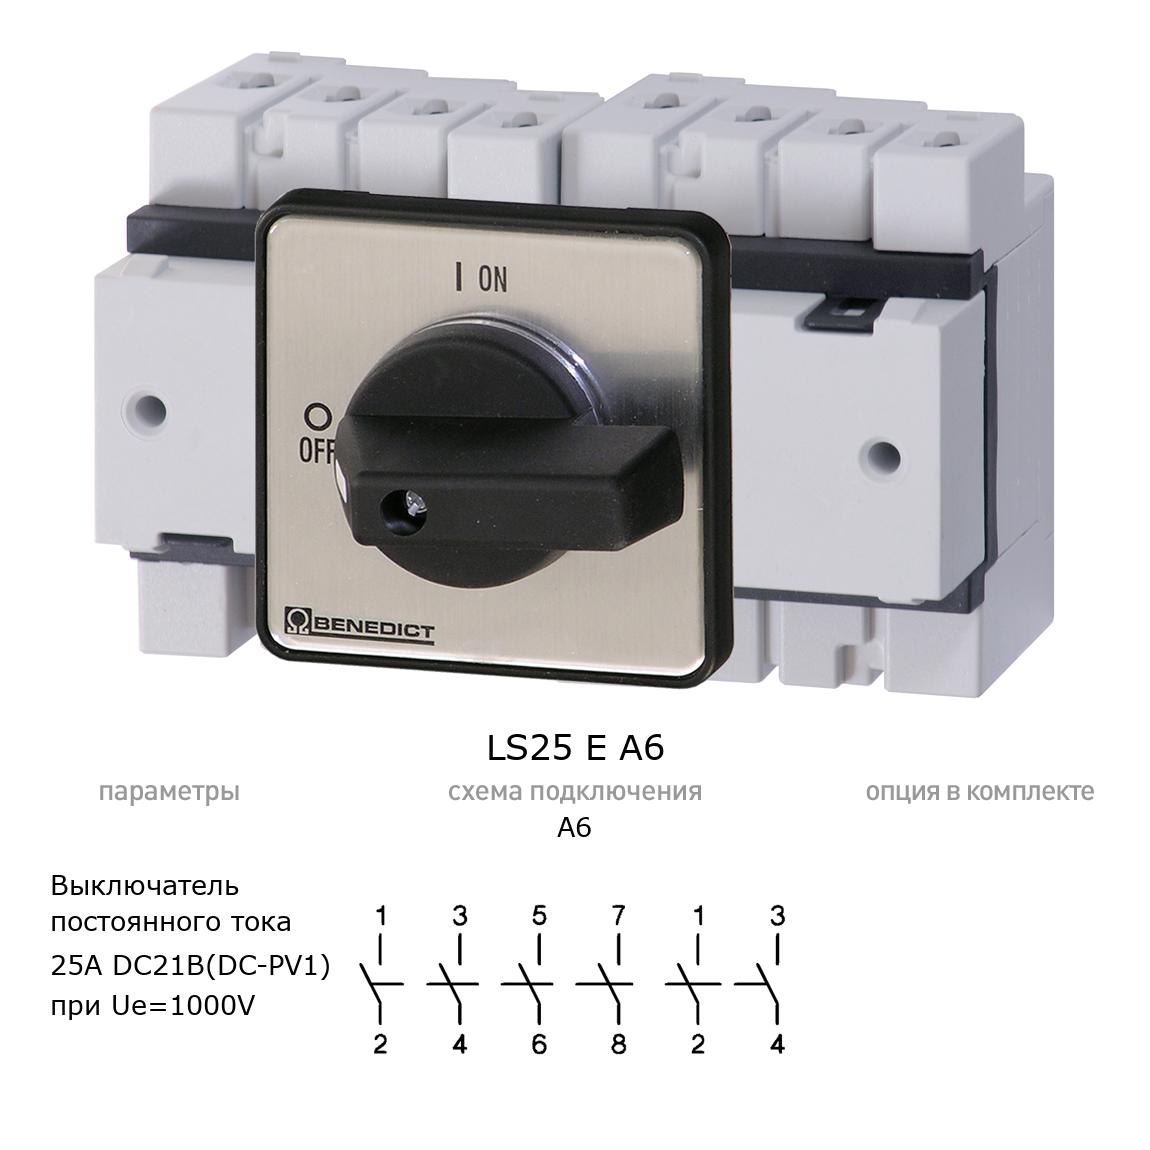 Кулачковый переключатель для постоянного тока (DC) LS25 E A6 BENEDICT